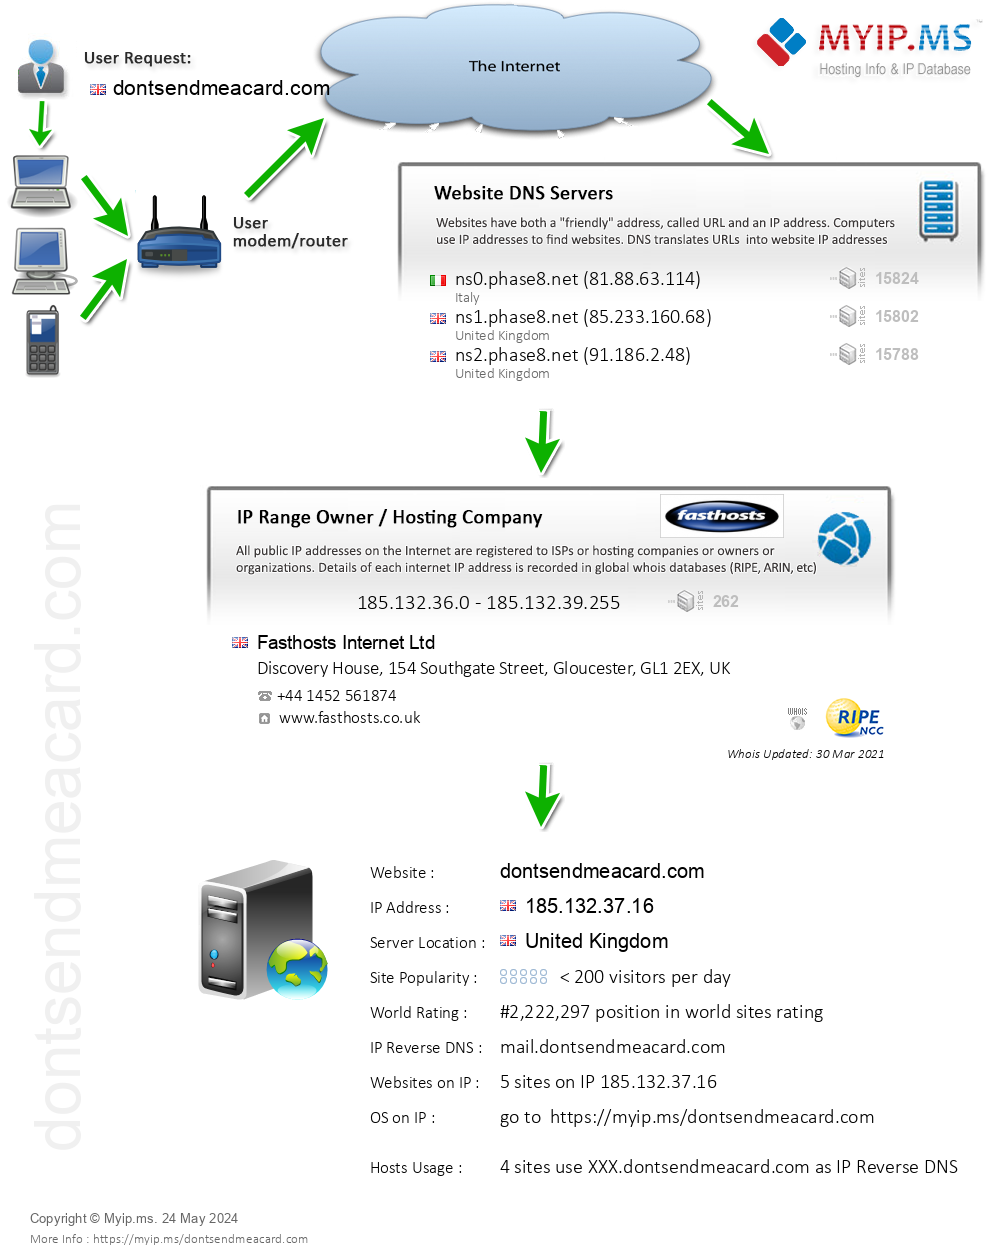 Dontsendmeacard.com - Website Hosting Visual IP Diagram